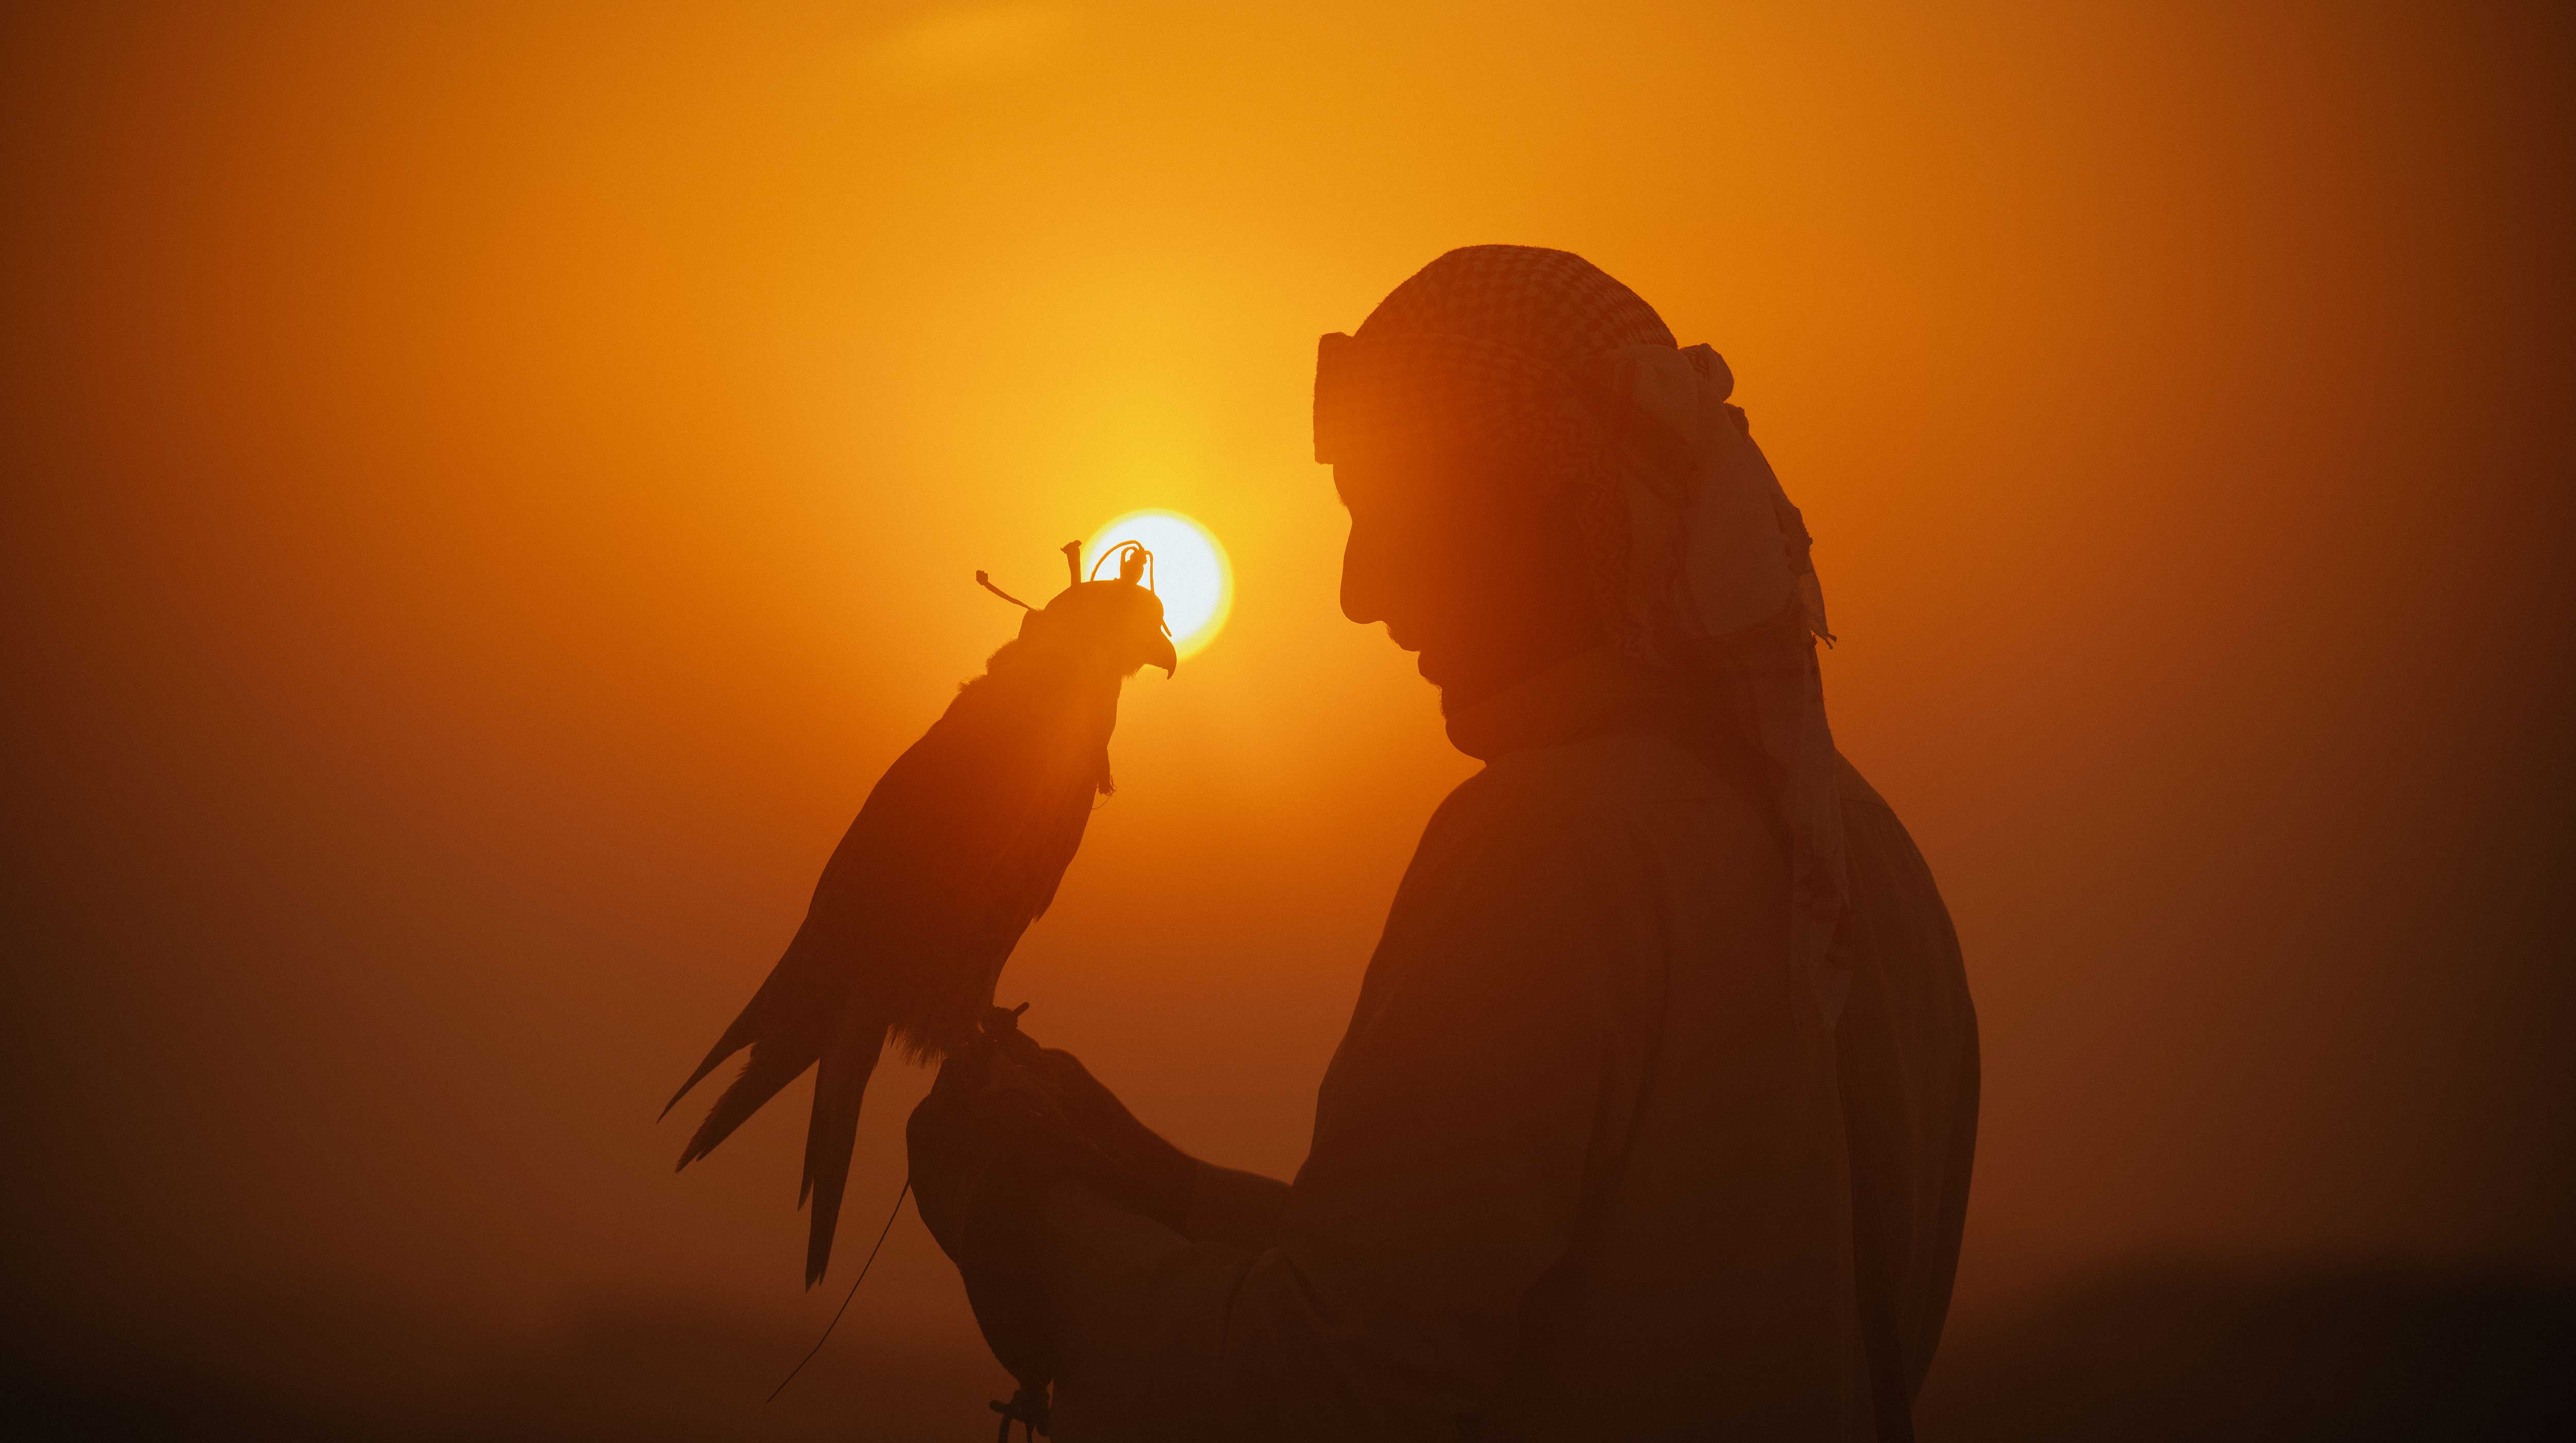 Un uomo in abiti arabi con un falco in mano al tramonto.